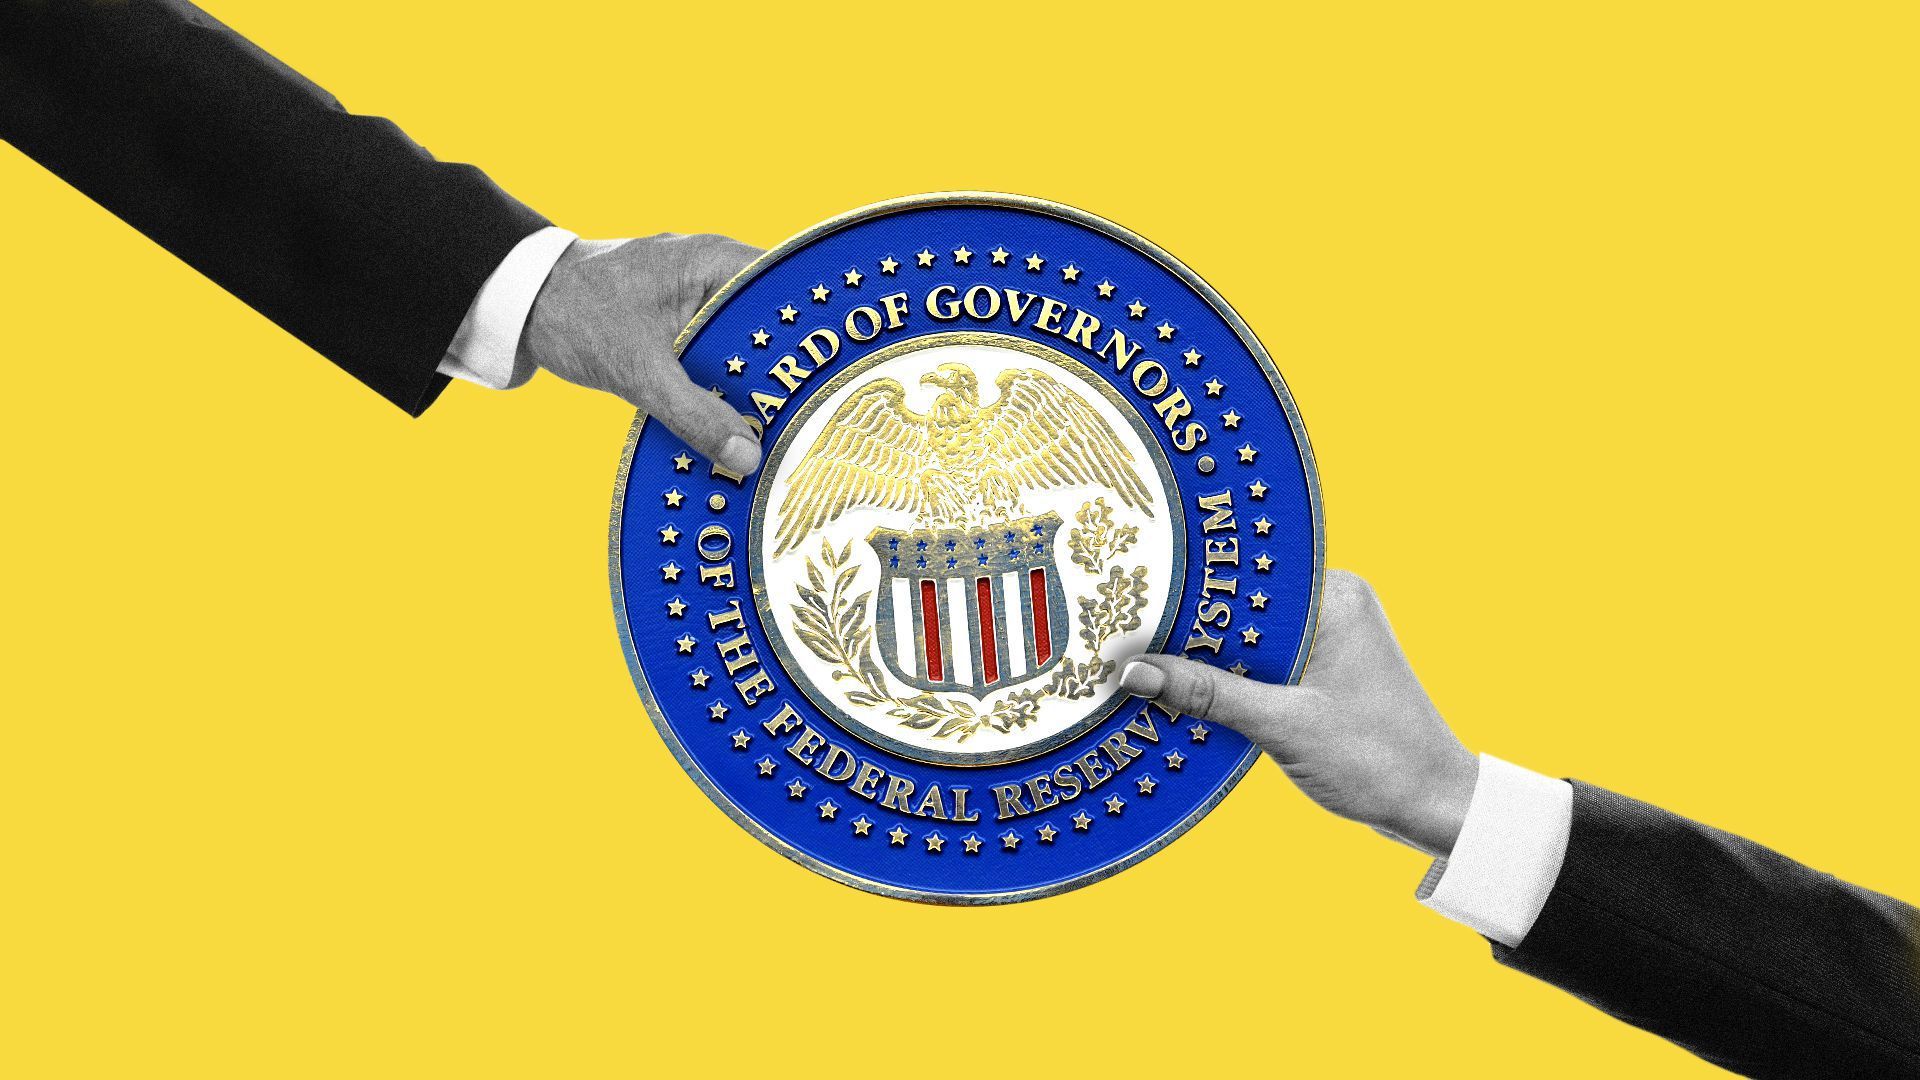 Tug of war over federal reserve logo